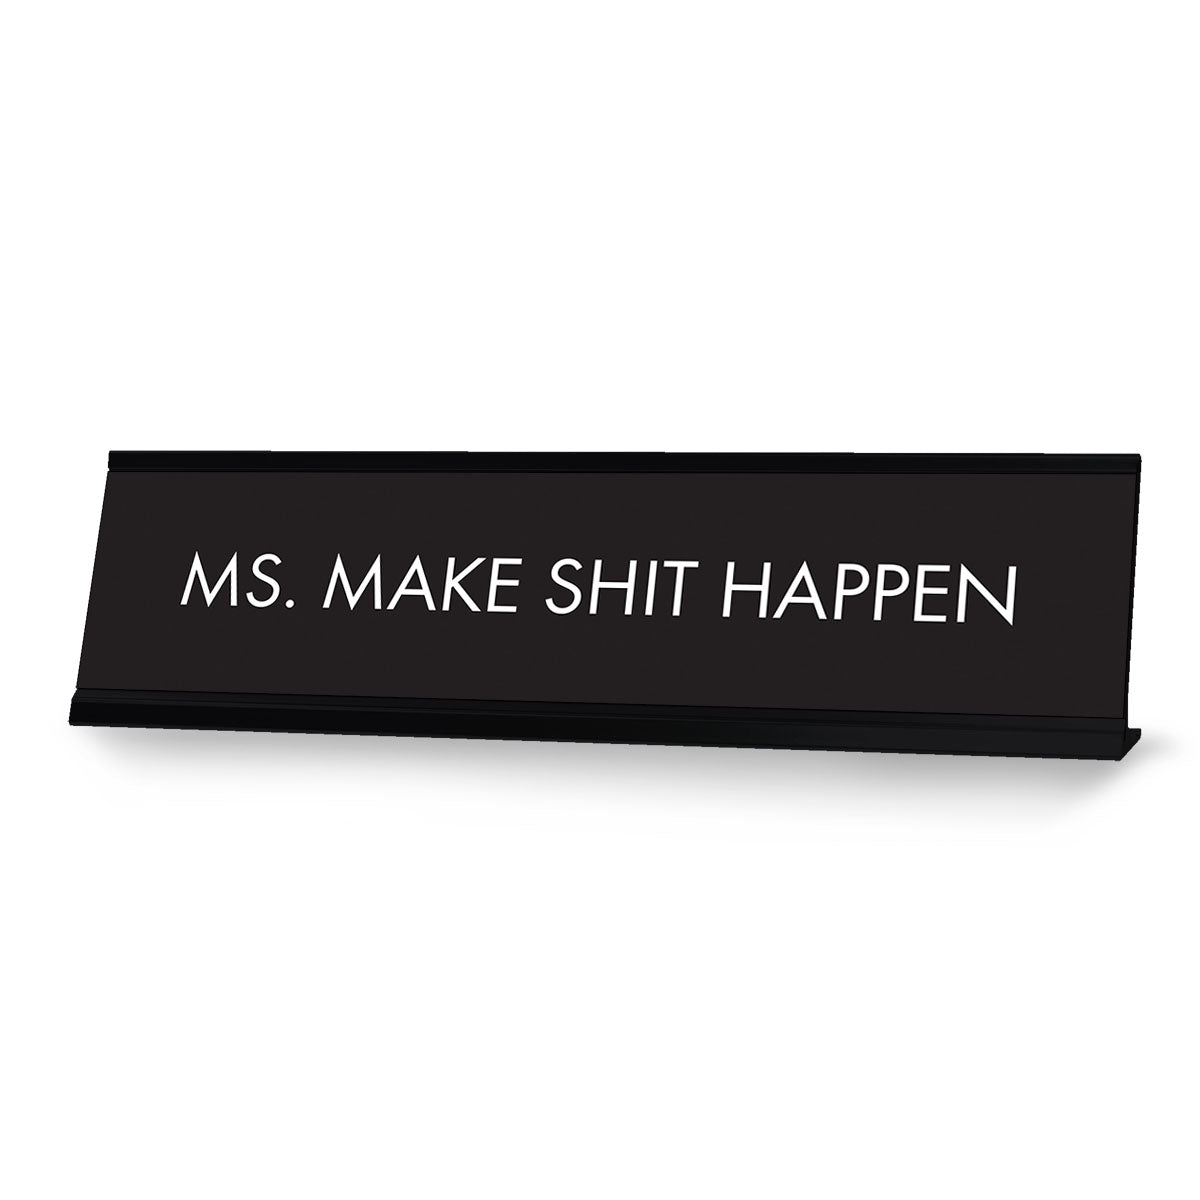 Ms. Make Shit Happen Black, Designer Series Desk Sign (2 x 8")